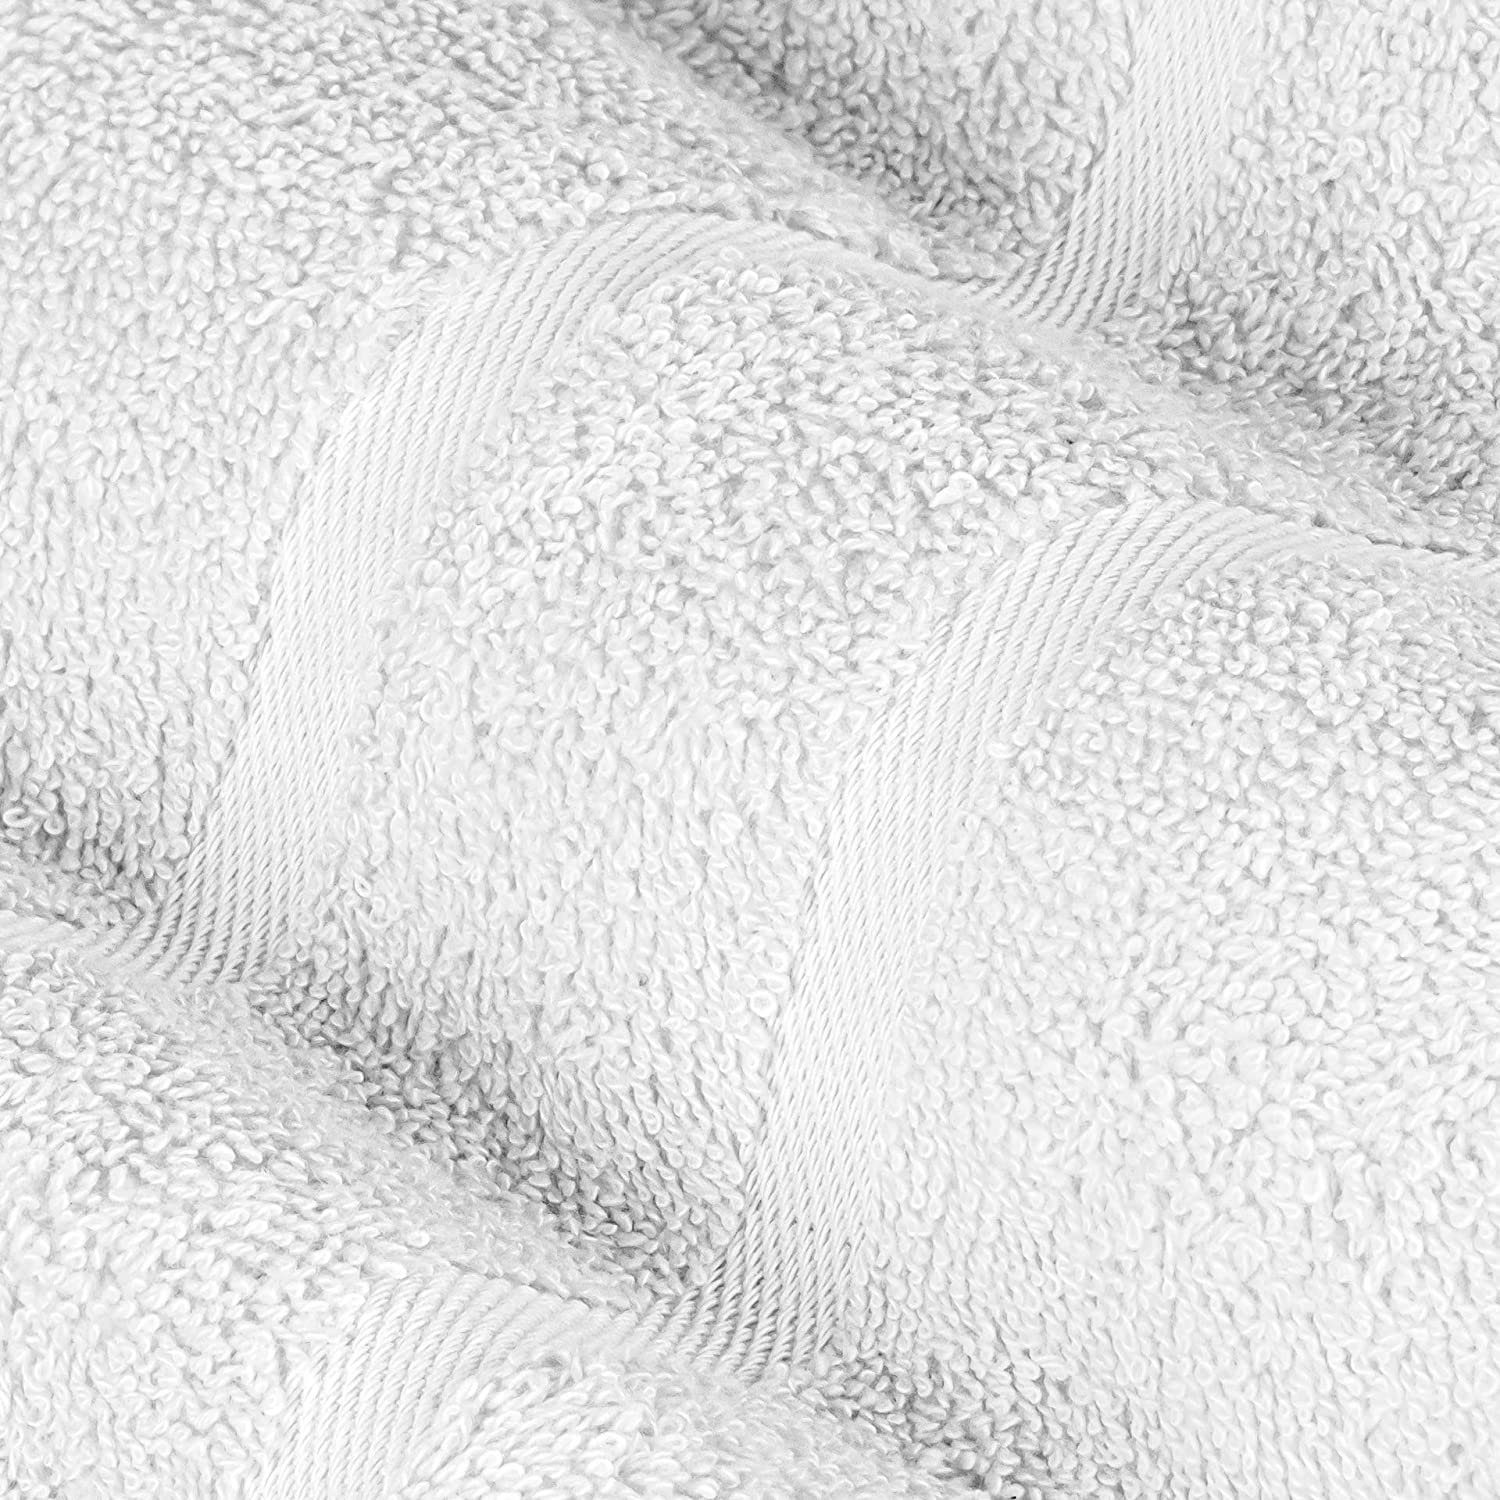 StickandShine Handtuch 2er Set Stück), Baumwolle 100% (2 Handtuch 500GSM 100% 50x100 Premium in Baumwolle Frottee Frottee 500g/m² cm aus Weiß